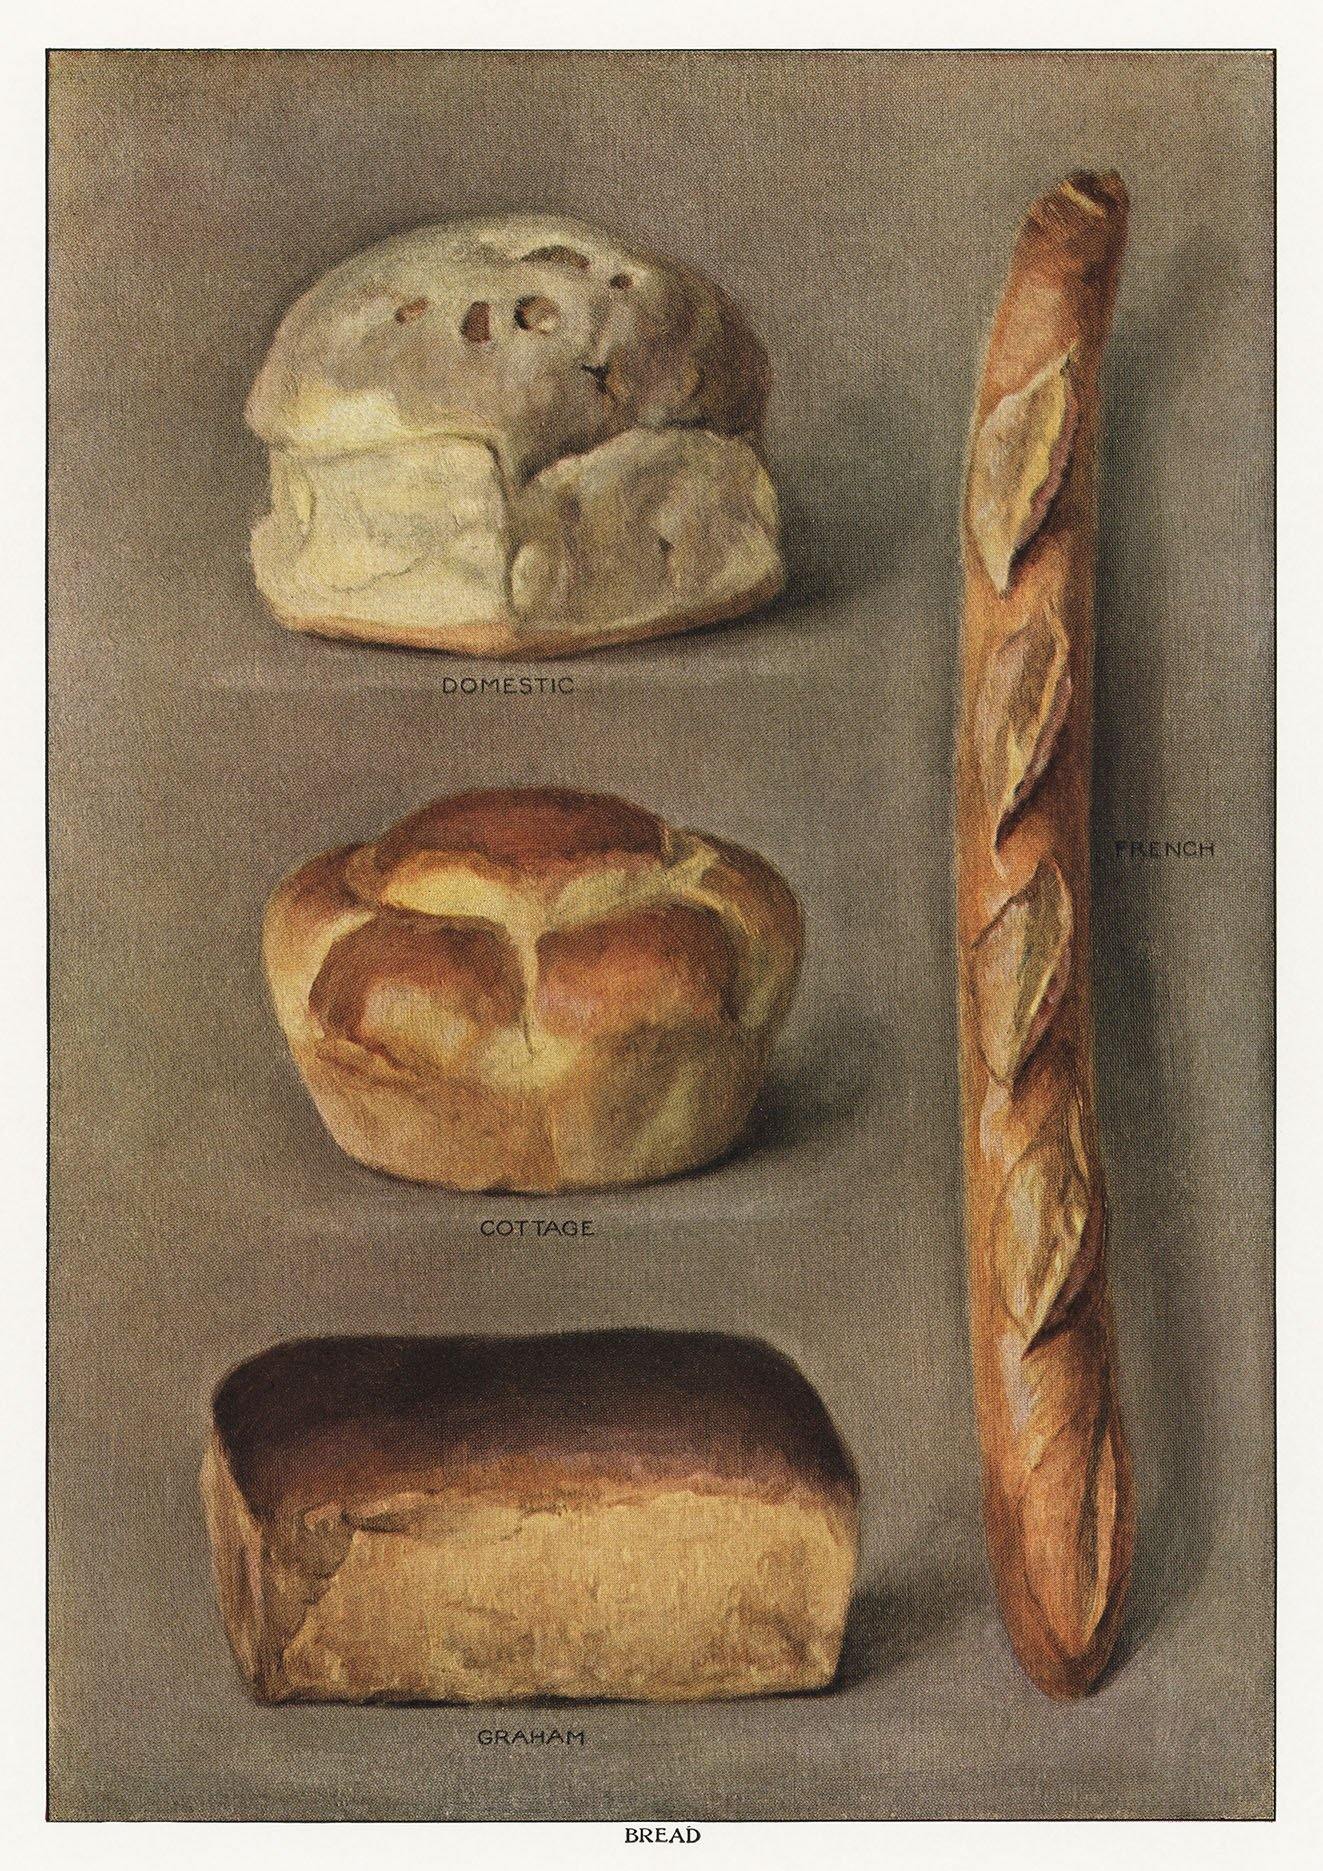 BREAD POSTER: Grocer's Encylopedia Baking Art Print - Pimlico Prints